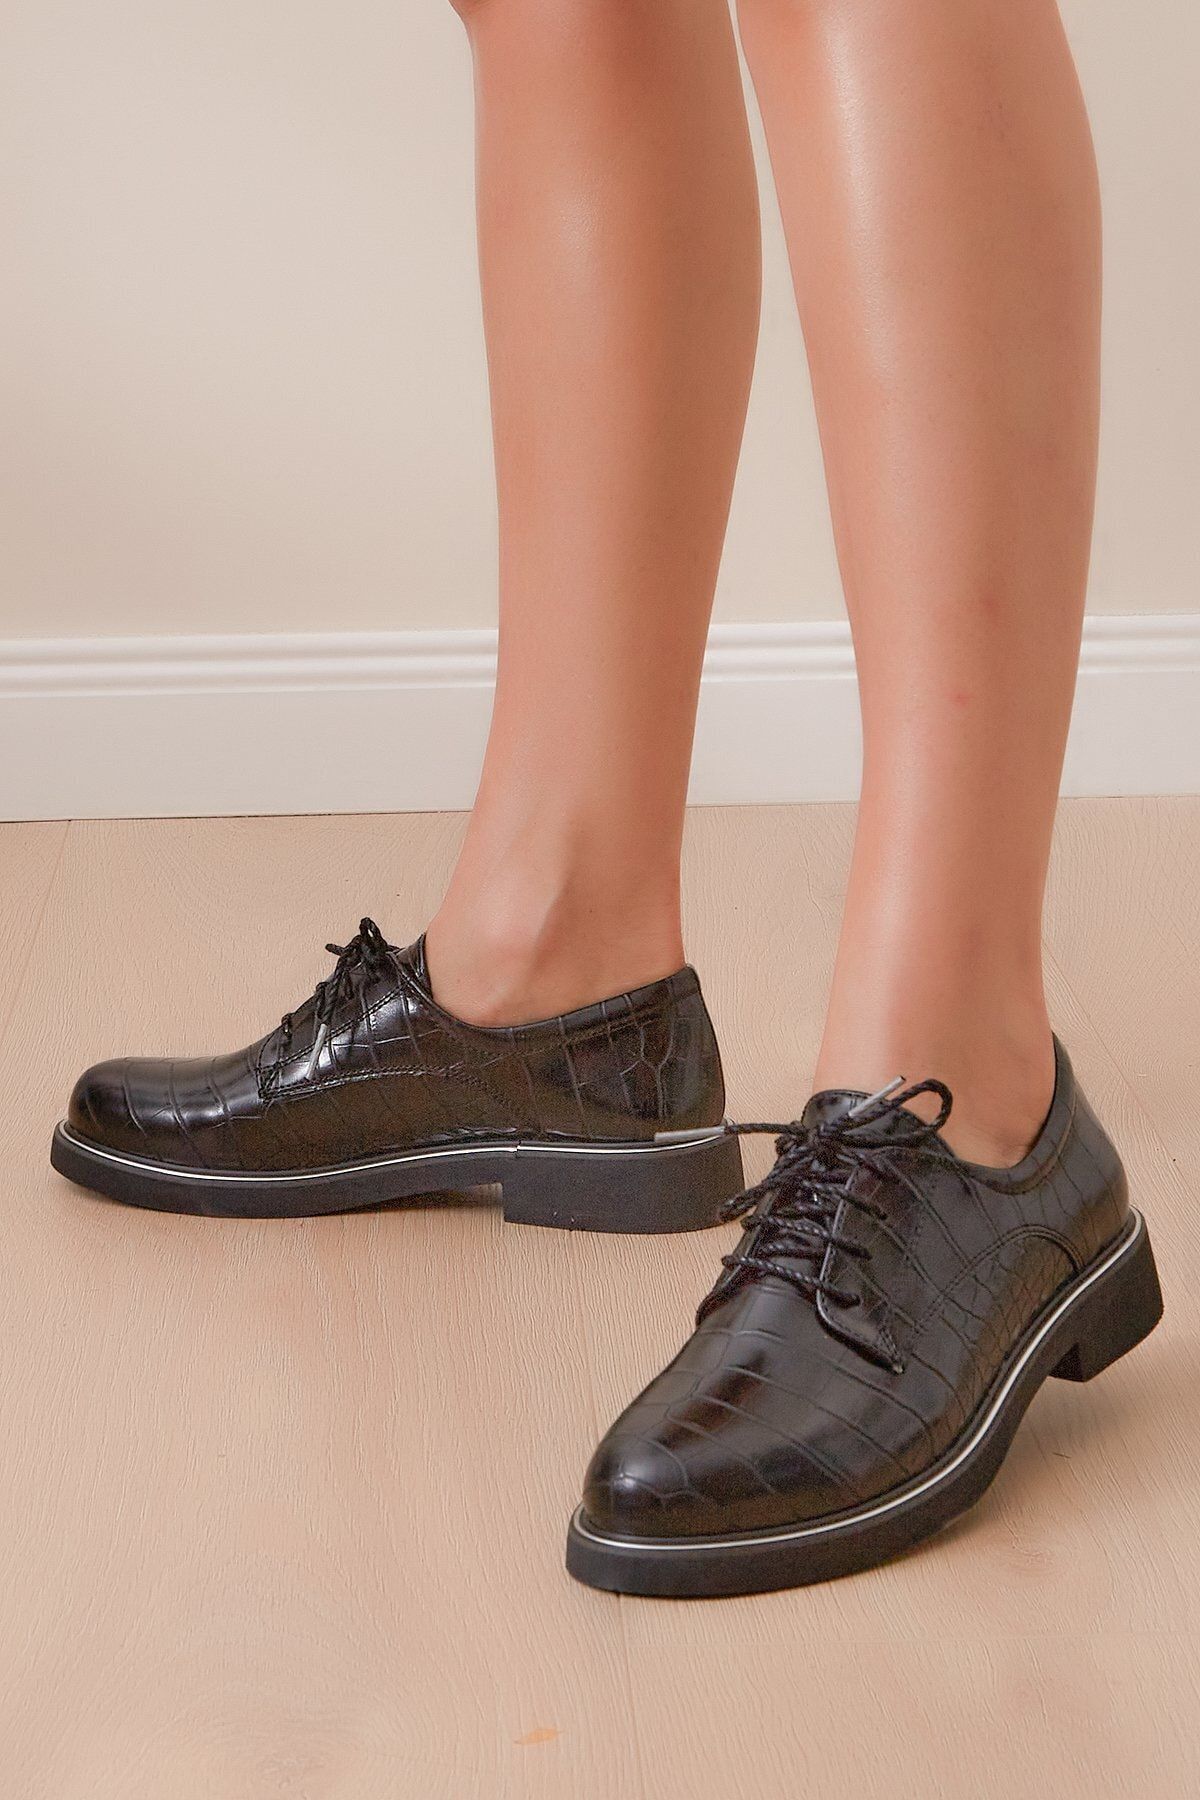 Shoes Time Kadın Siyah Günlük Ayakkabı 19k 105